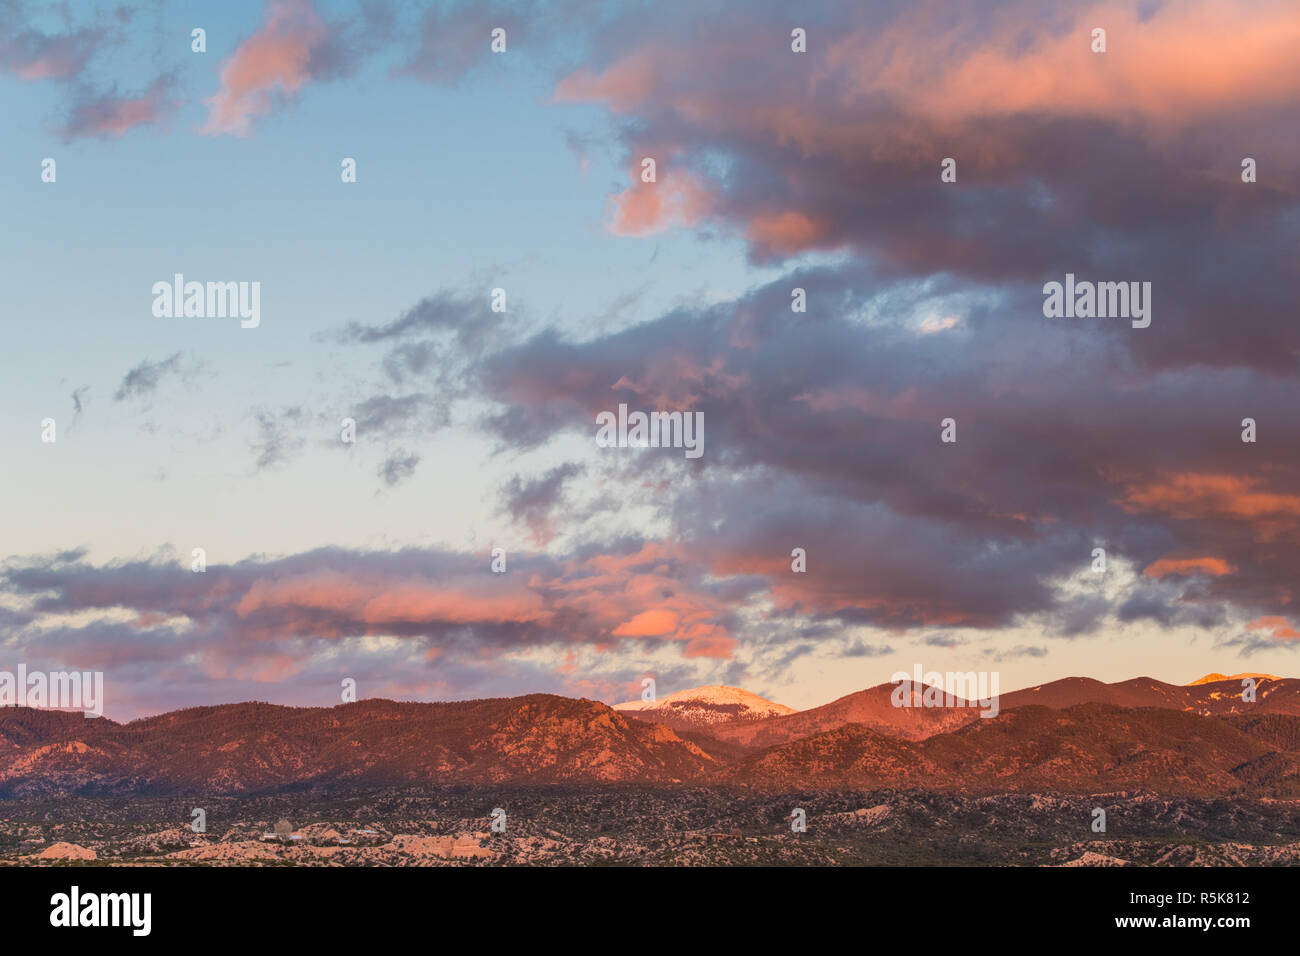 Dramatische, wunderschönen Sonnenuntergang wirft lila und orange Farben auf Wolken und Berge über eine Nachbarschaft in Tesuque, in der Nähe von Santa Fe, New Mexico Stockfoto